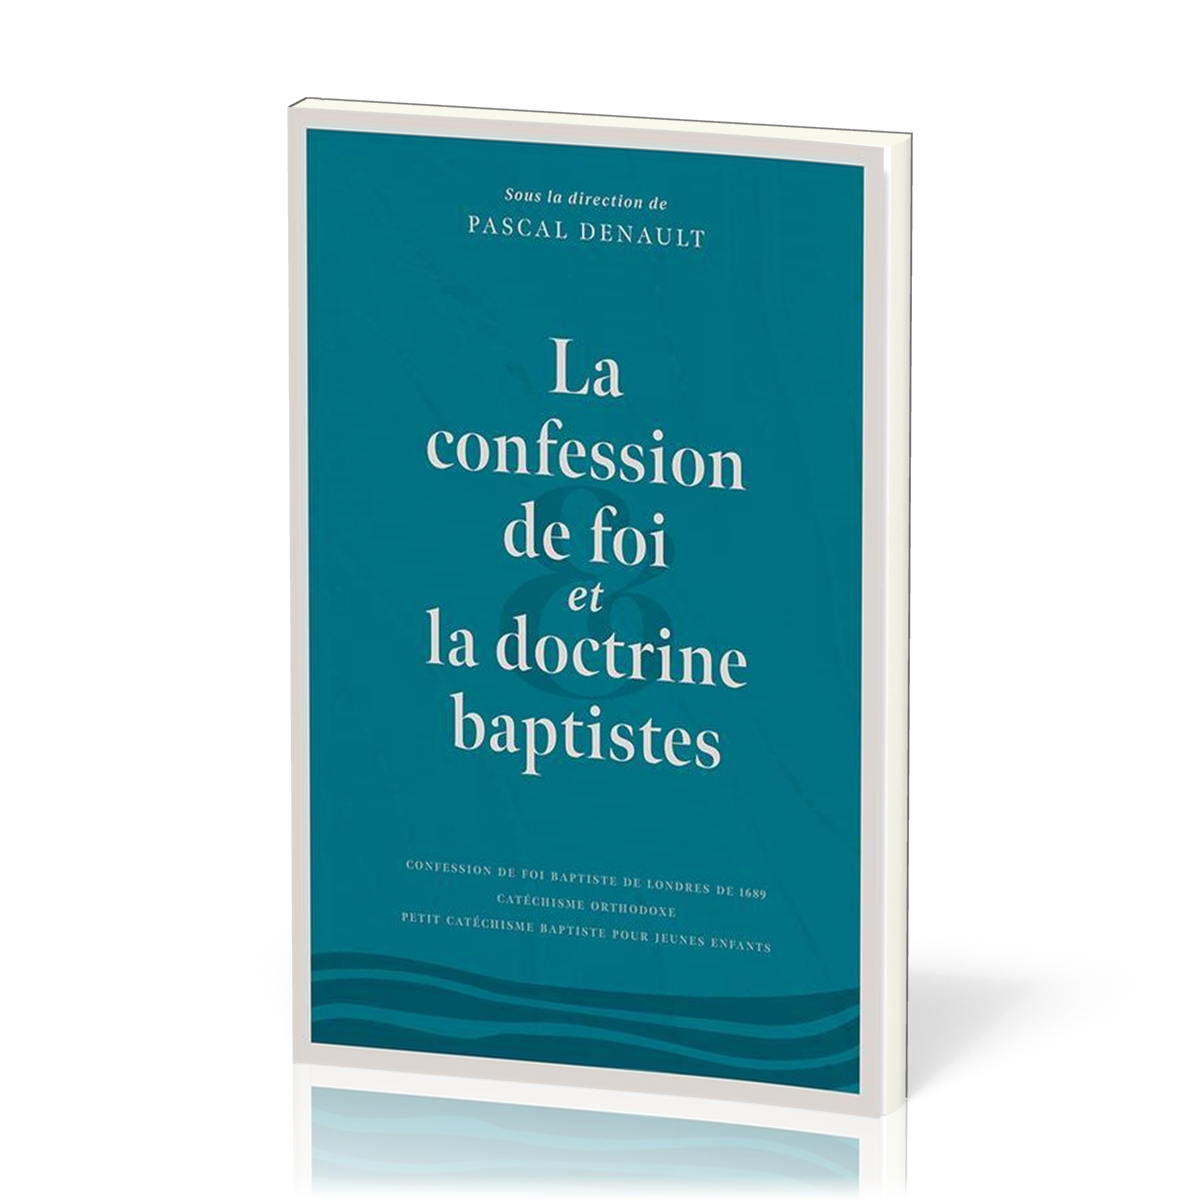 Confession de foi et la doctrine baptistes (La)